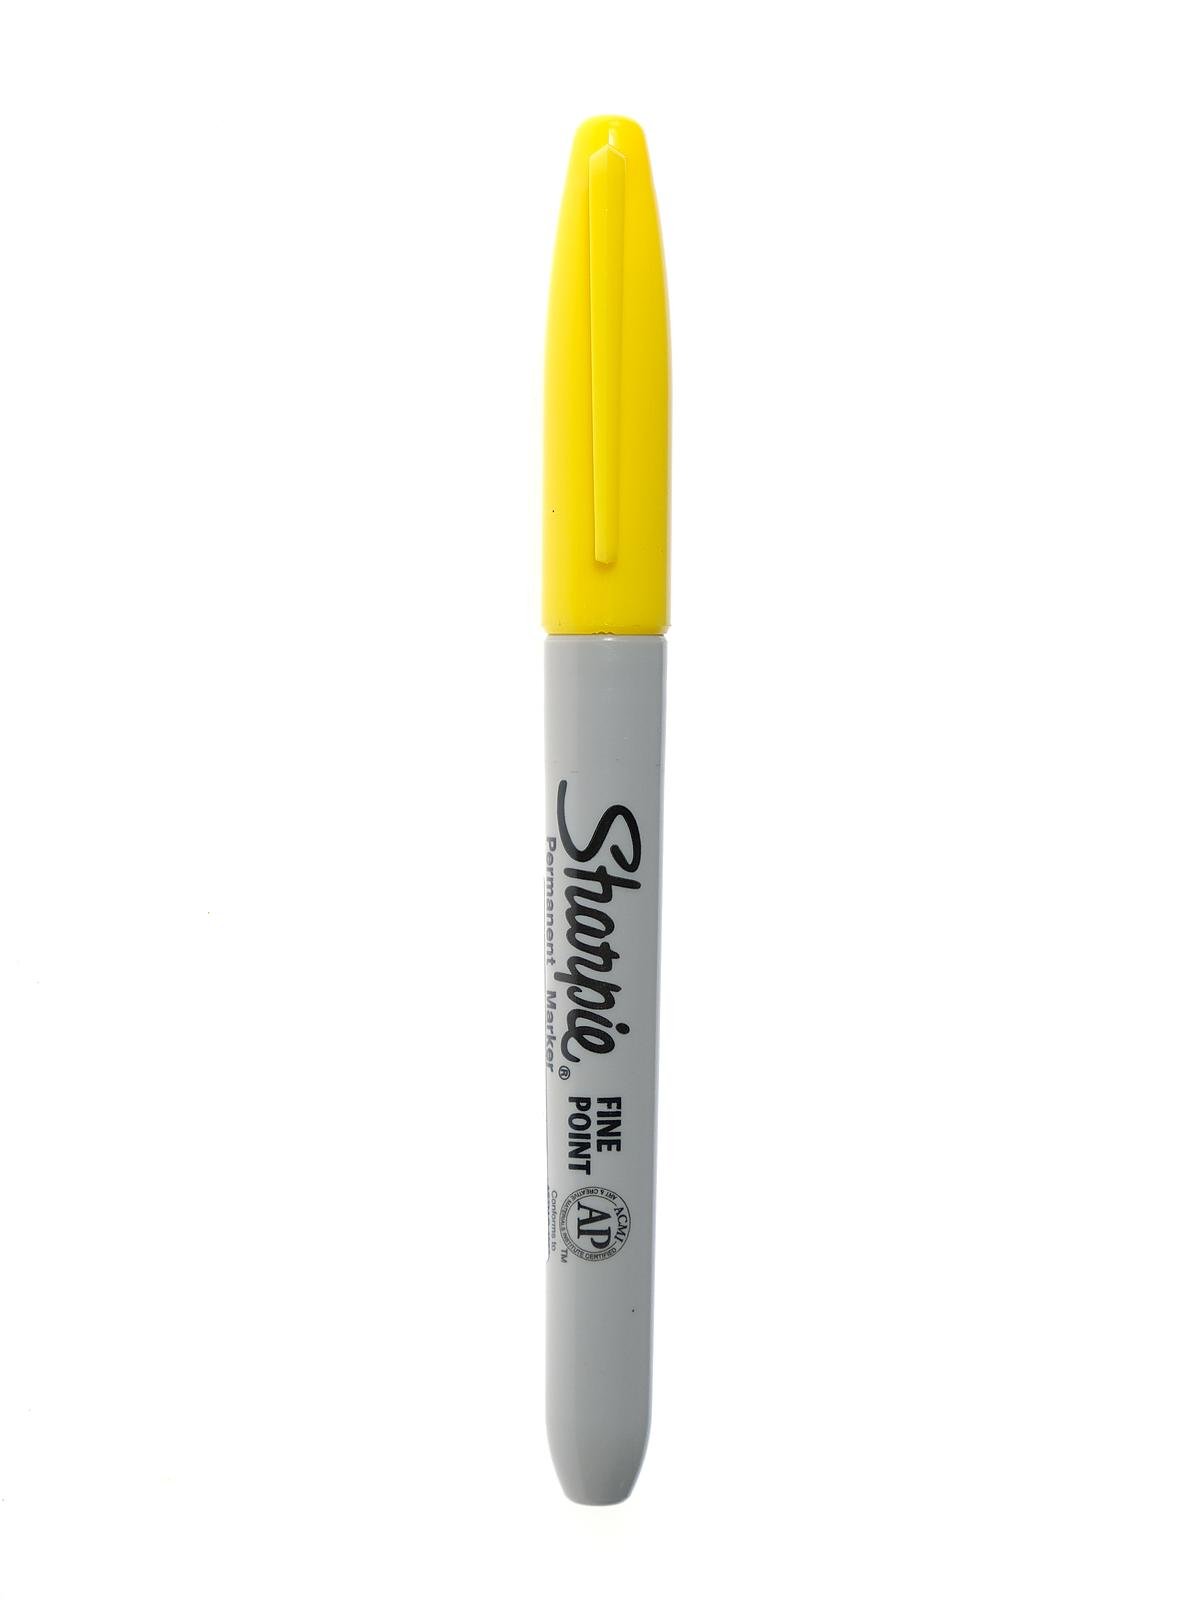 SSharpie  Fine Point Permanent Marker, Yellow